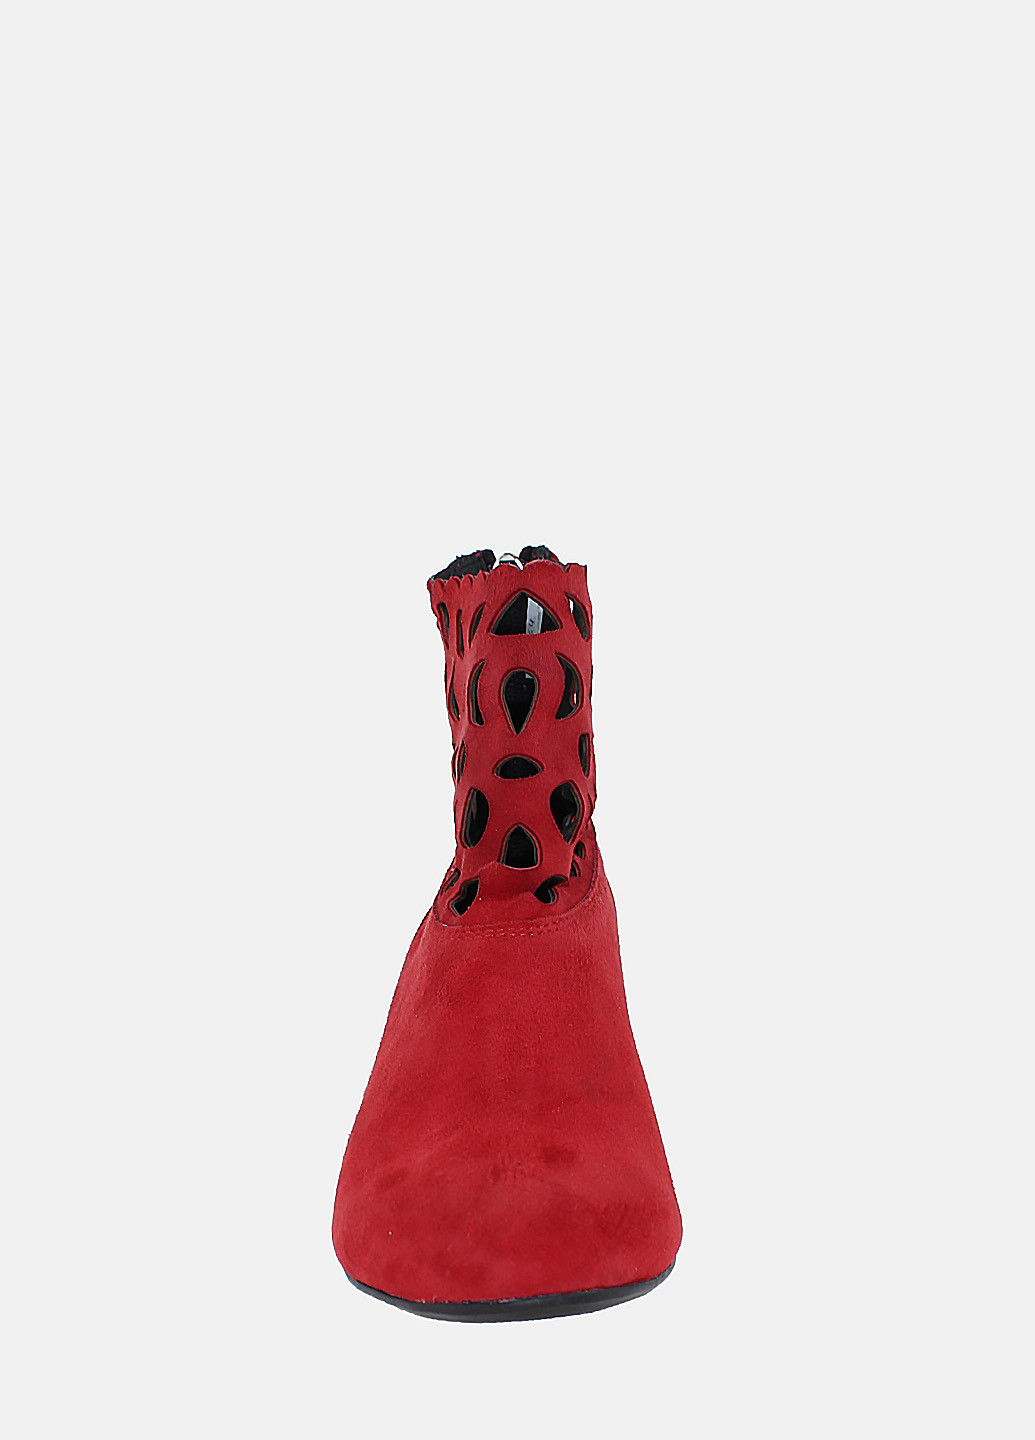 Осенние ботинки re5632-11 красный Eleni из натуральной замши